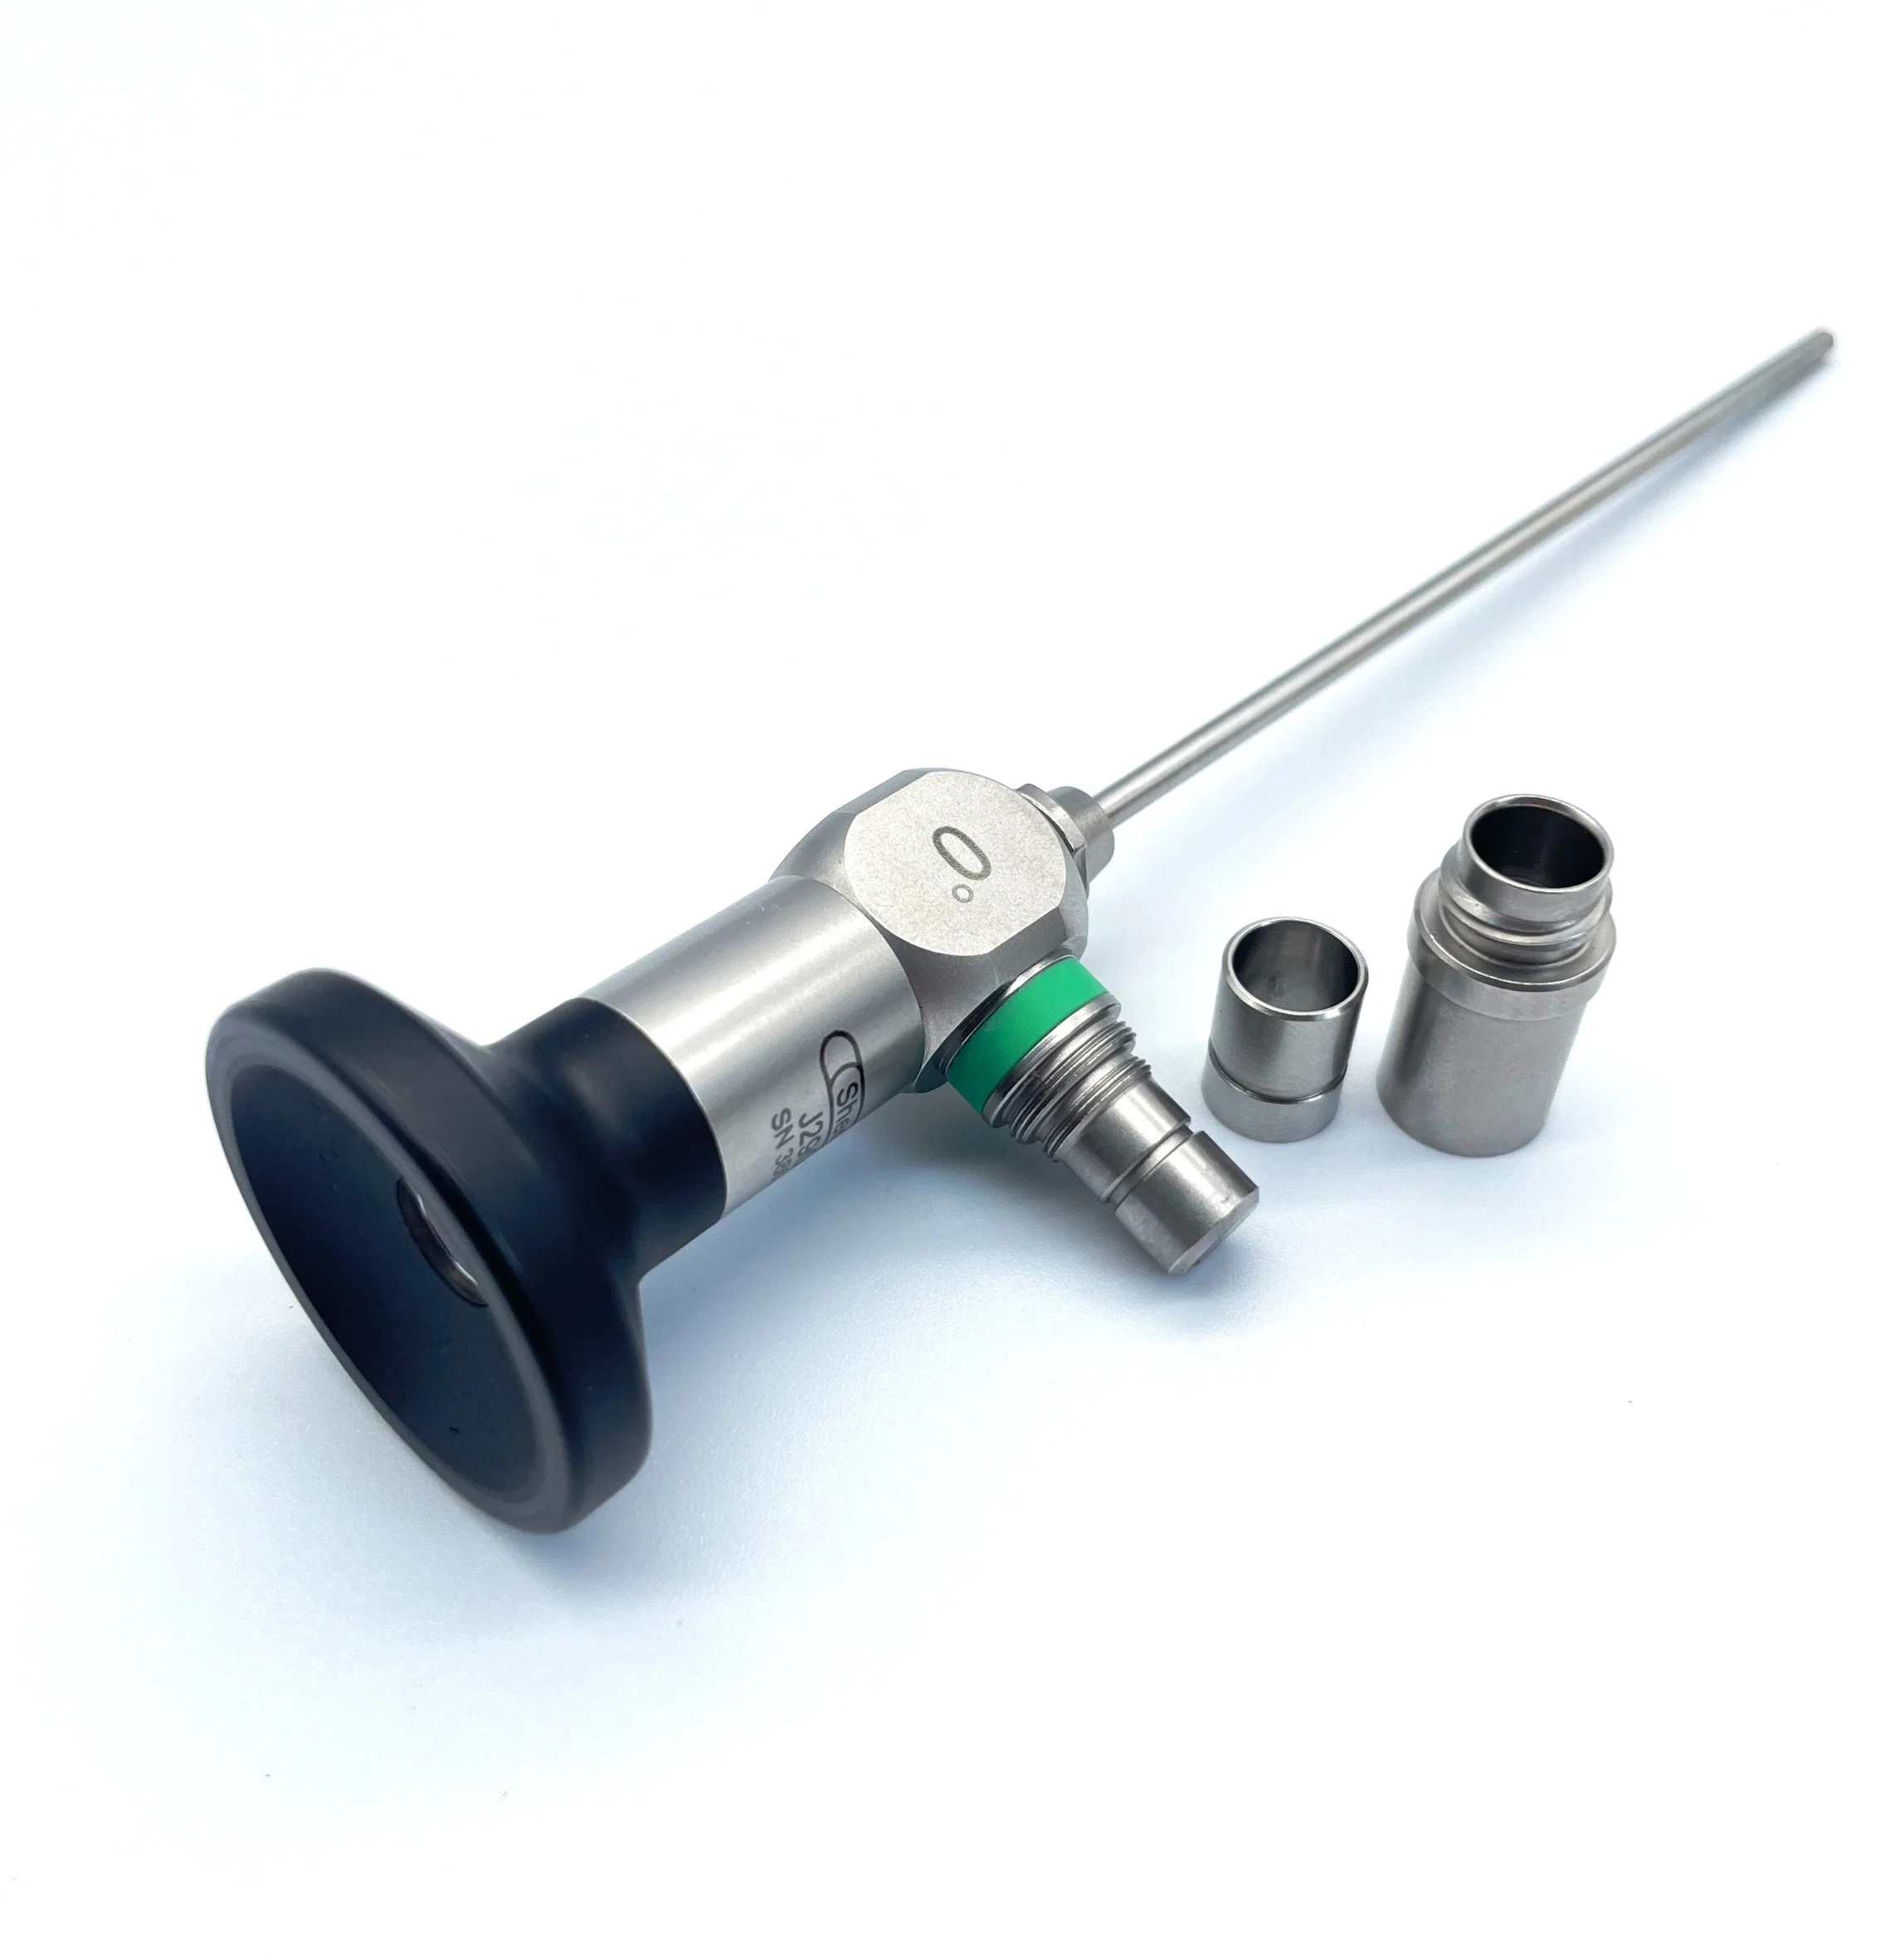 Endoscopio rígido médico quirúrgico de 4mm Ent endoscopio 0/30/70 grado